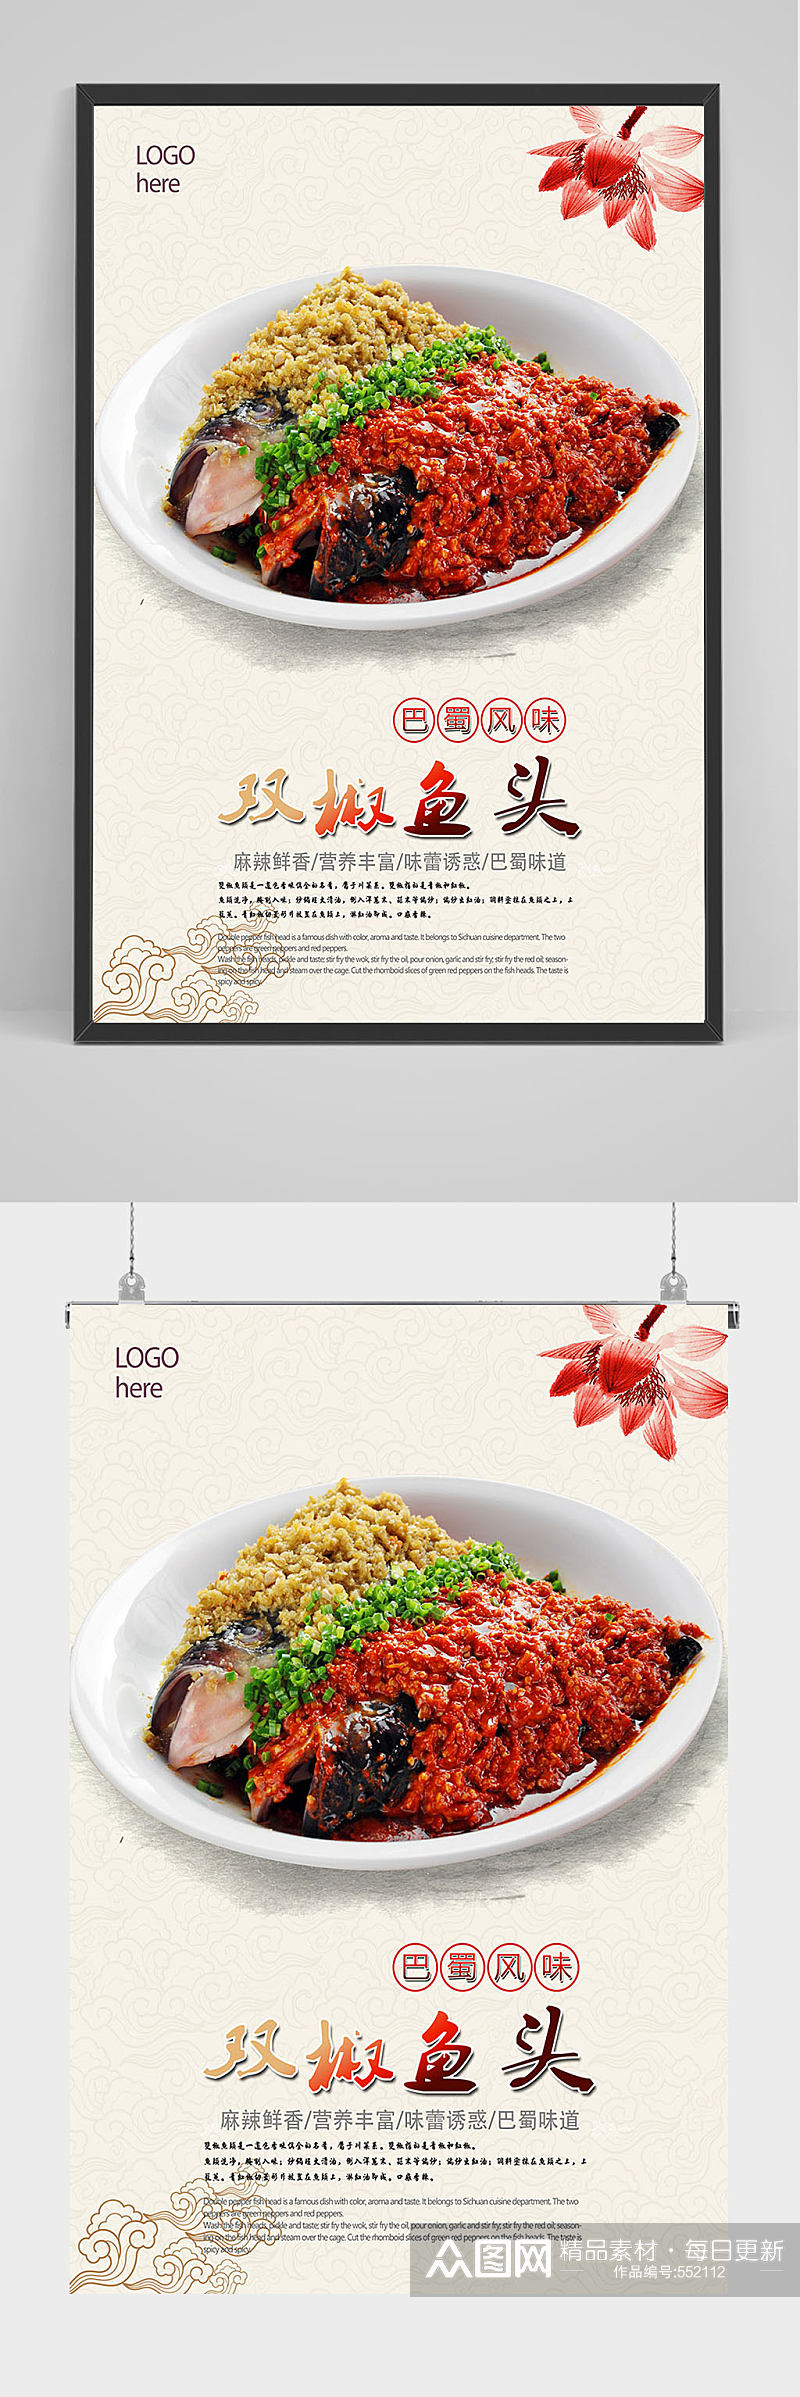 精品美食剁椒鱼头海报设计素材